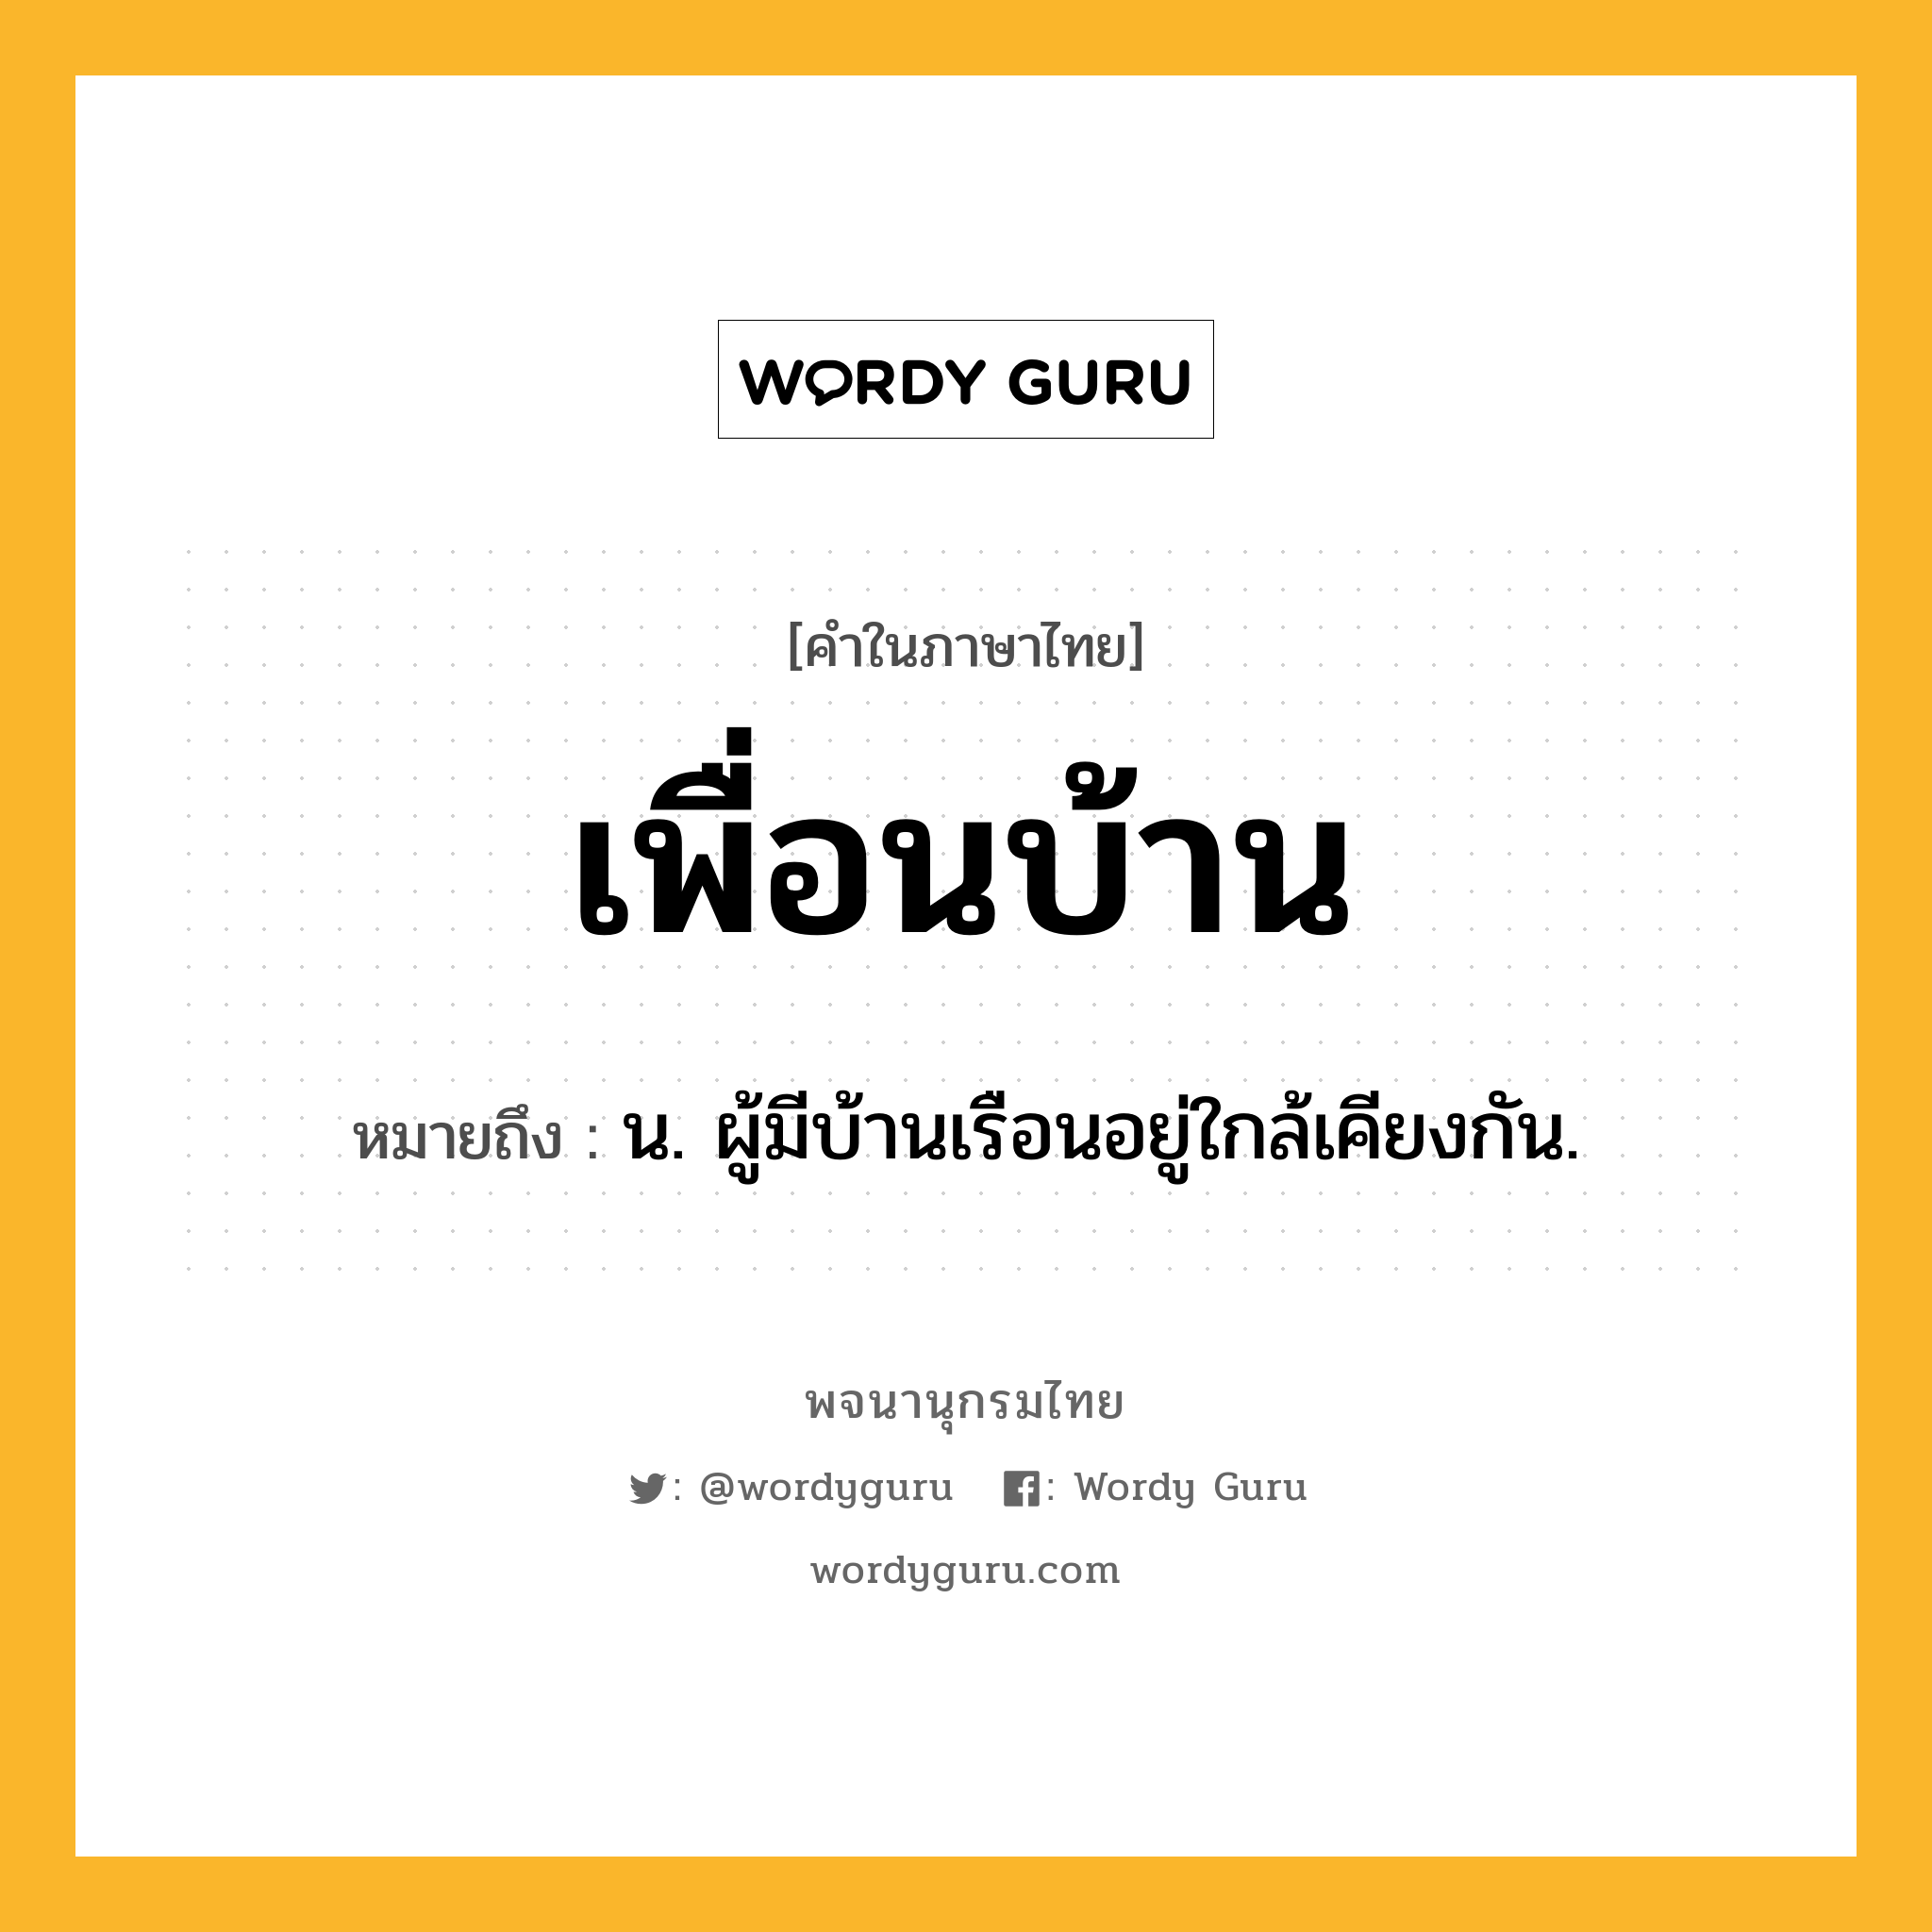 เพื่อนบ้าน หมายถึงอะไร?, คำในภาษาไทย เพื่อนบ้าน หมายถึง น. ผู้มีบ้านเรือนอยู่ใกล้เคียงกัน.